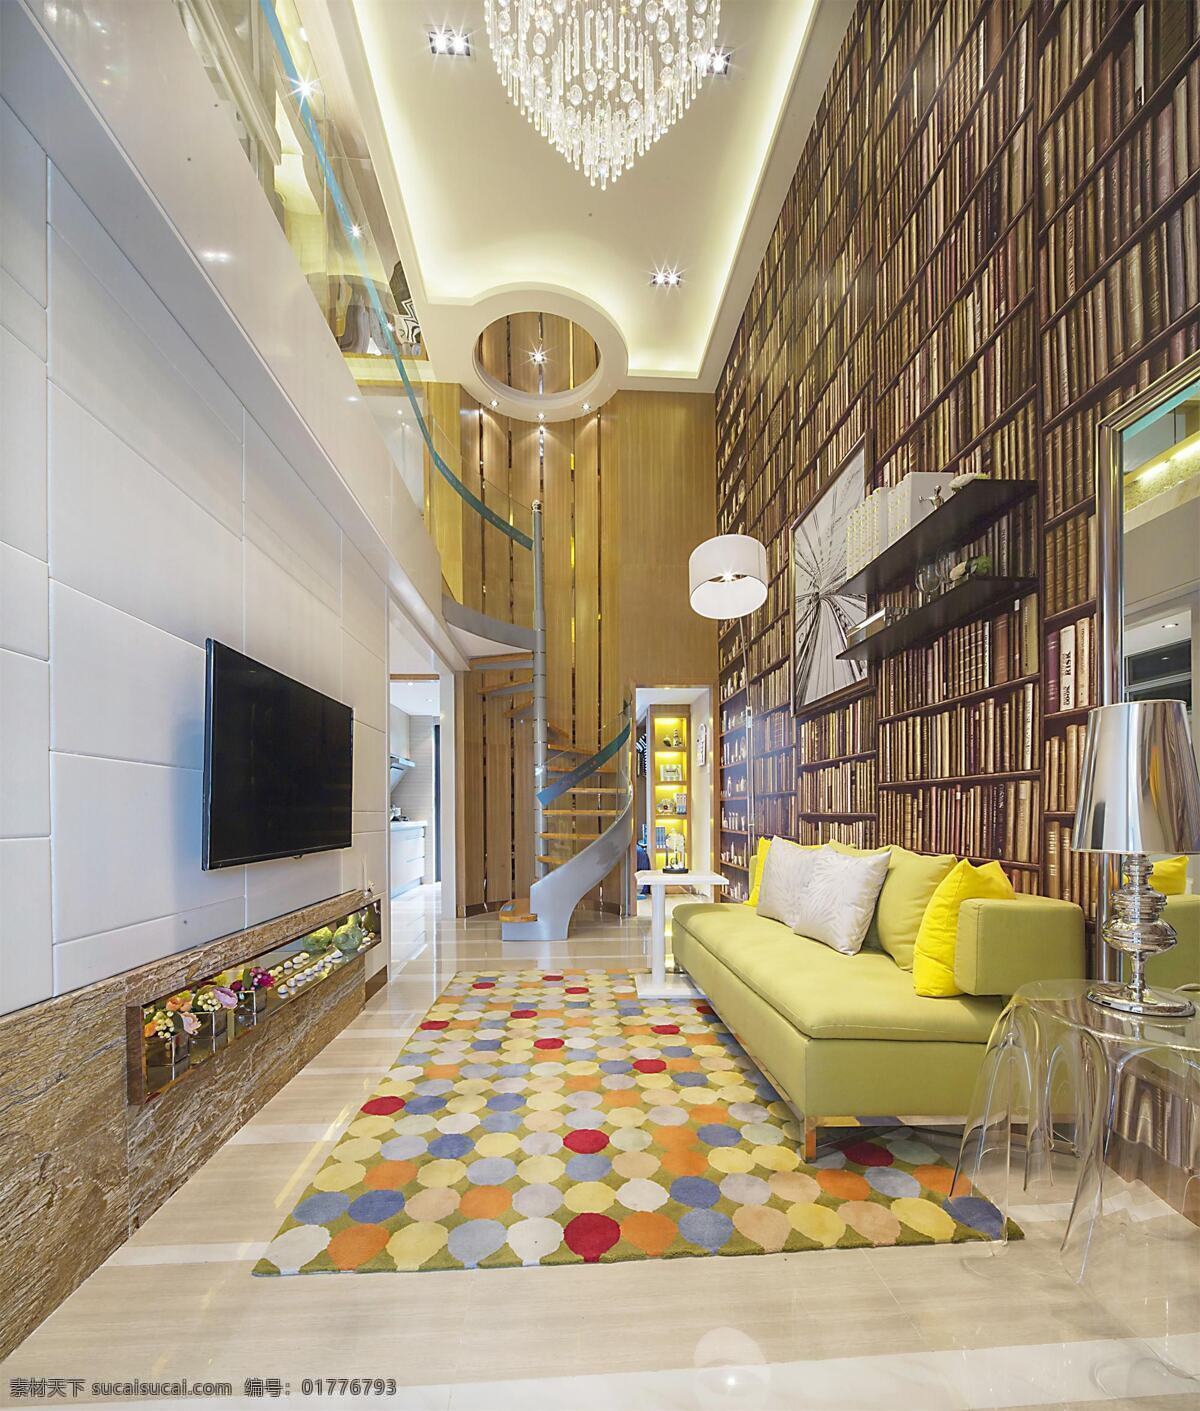 欧式 客厅 水晶 吊灯 装修 室内 效果图 白色射灯 彩色格子地毯 电视机 黄色沙发 浅色 电视 背景 墙 台灯